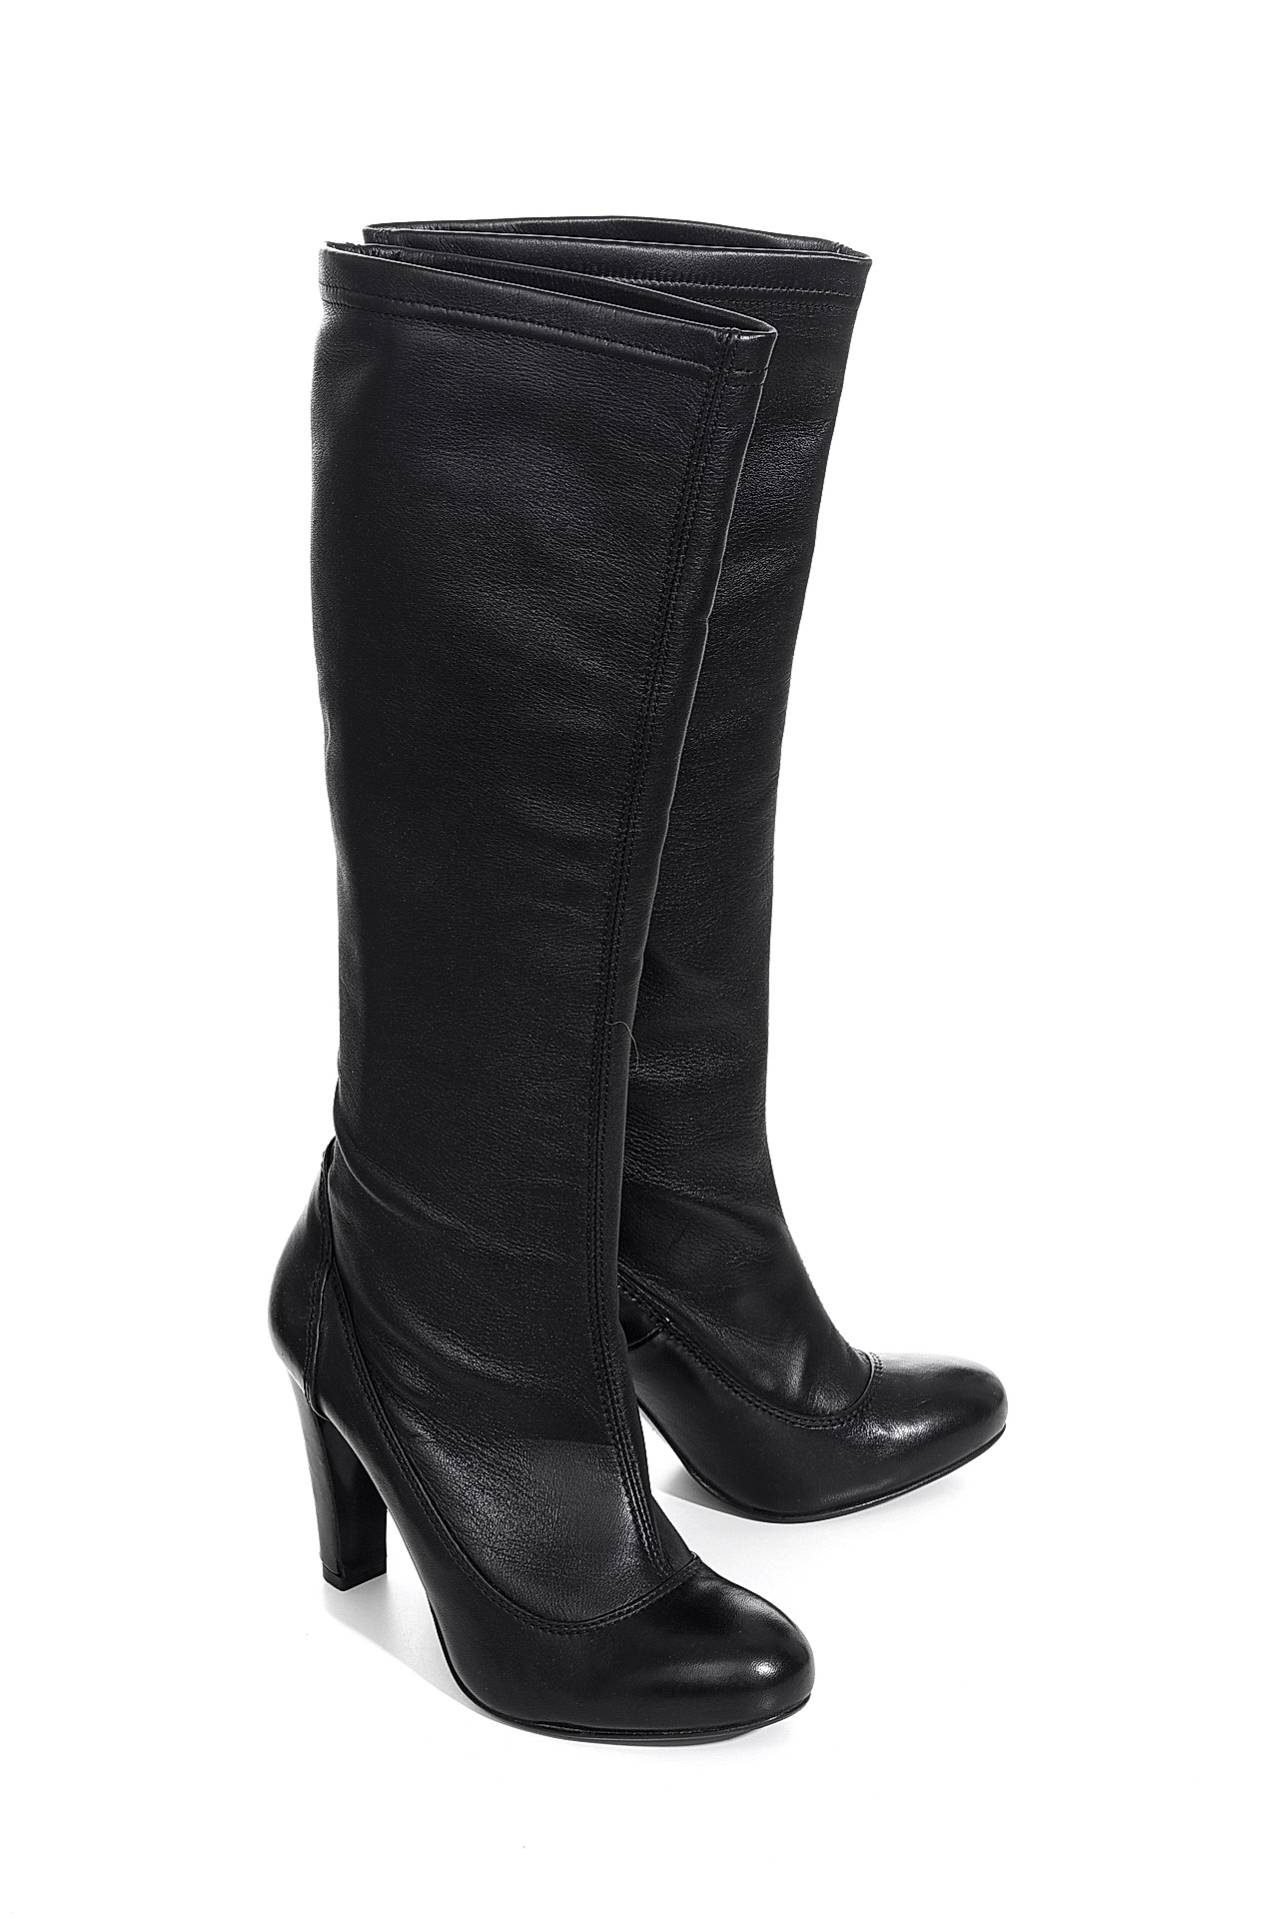 Обувь женская Сапоги EVA TURNER (EE7145/19). Купить за 15000 руб.